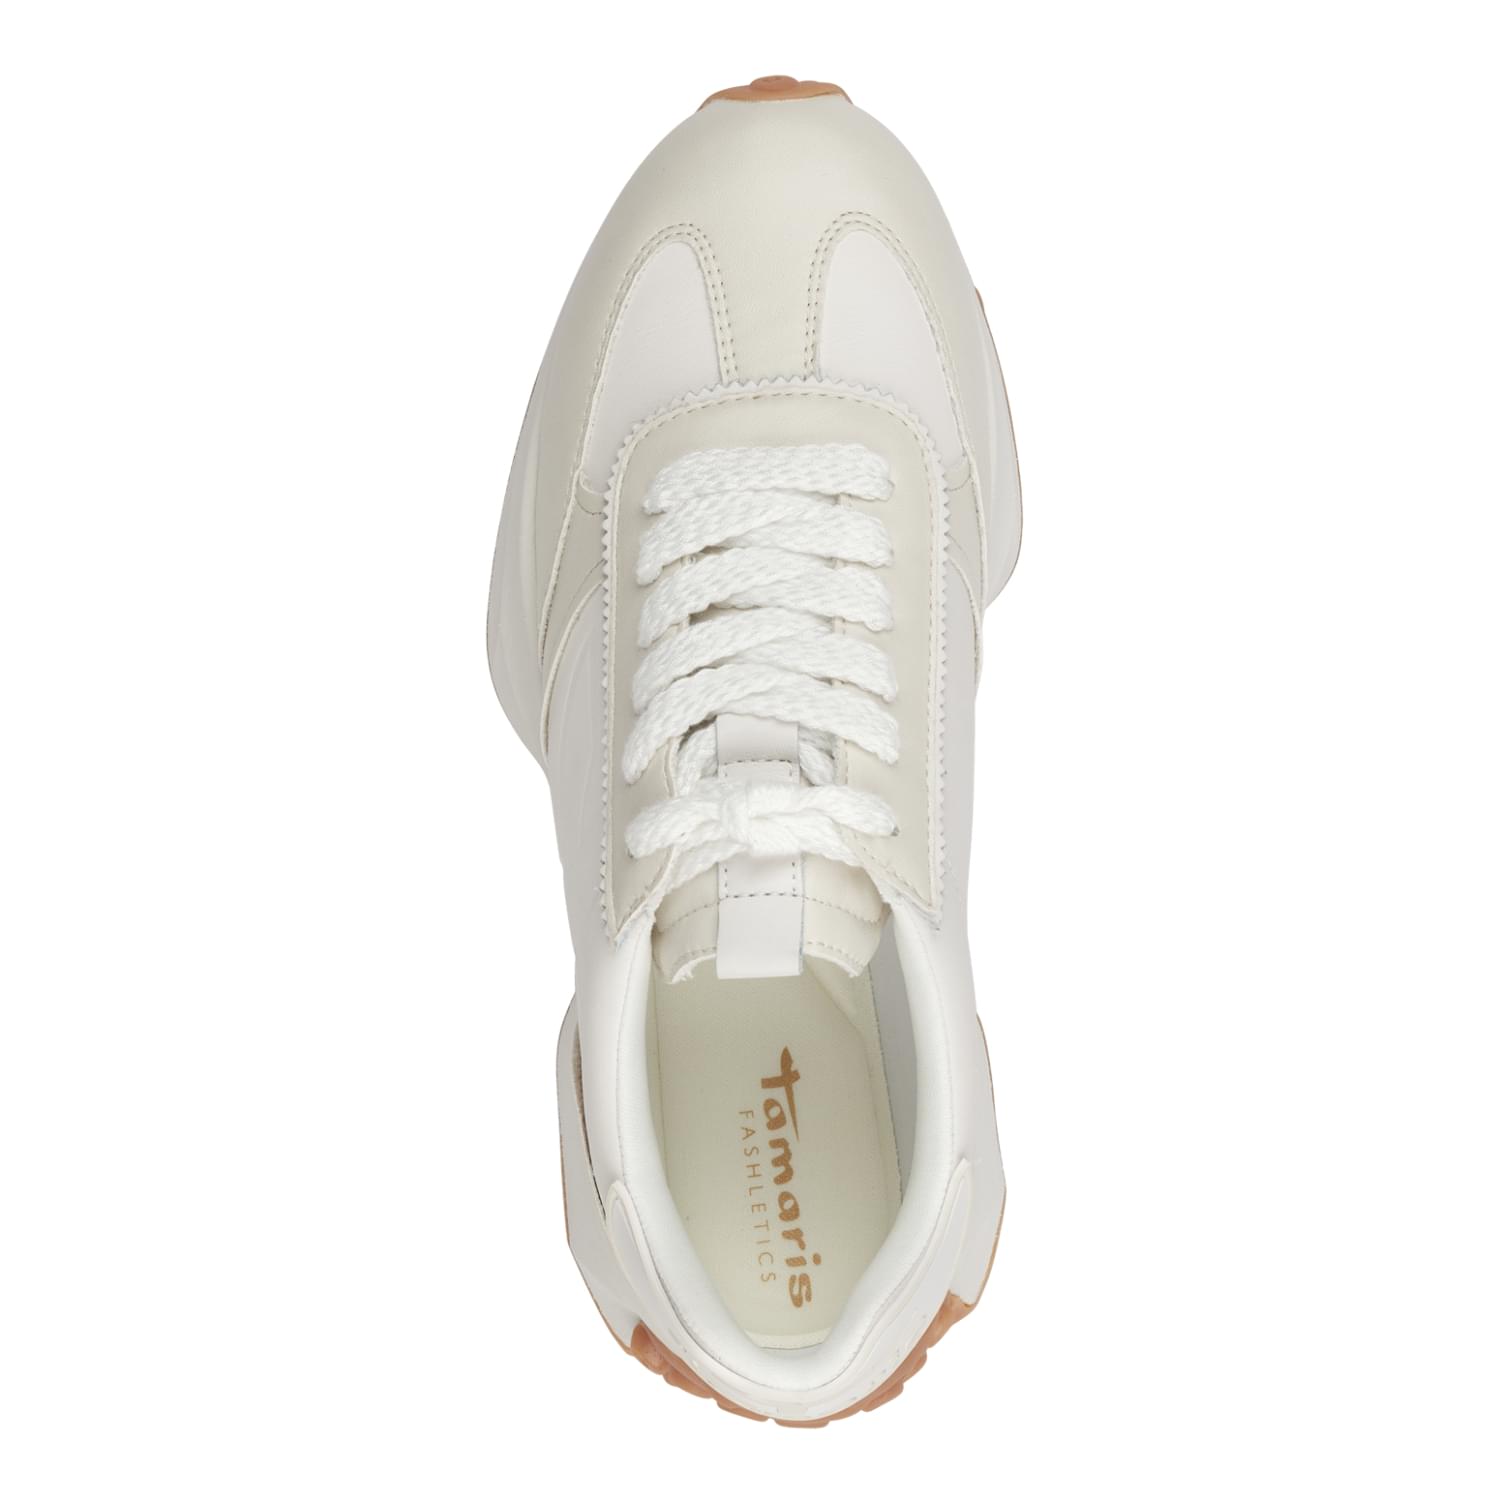 Tamaris Elysian Sneakers 1-1-23849-30 in Offwhite